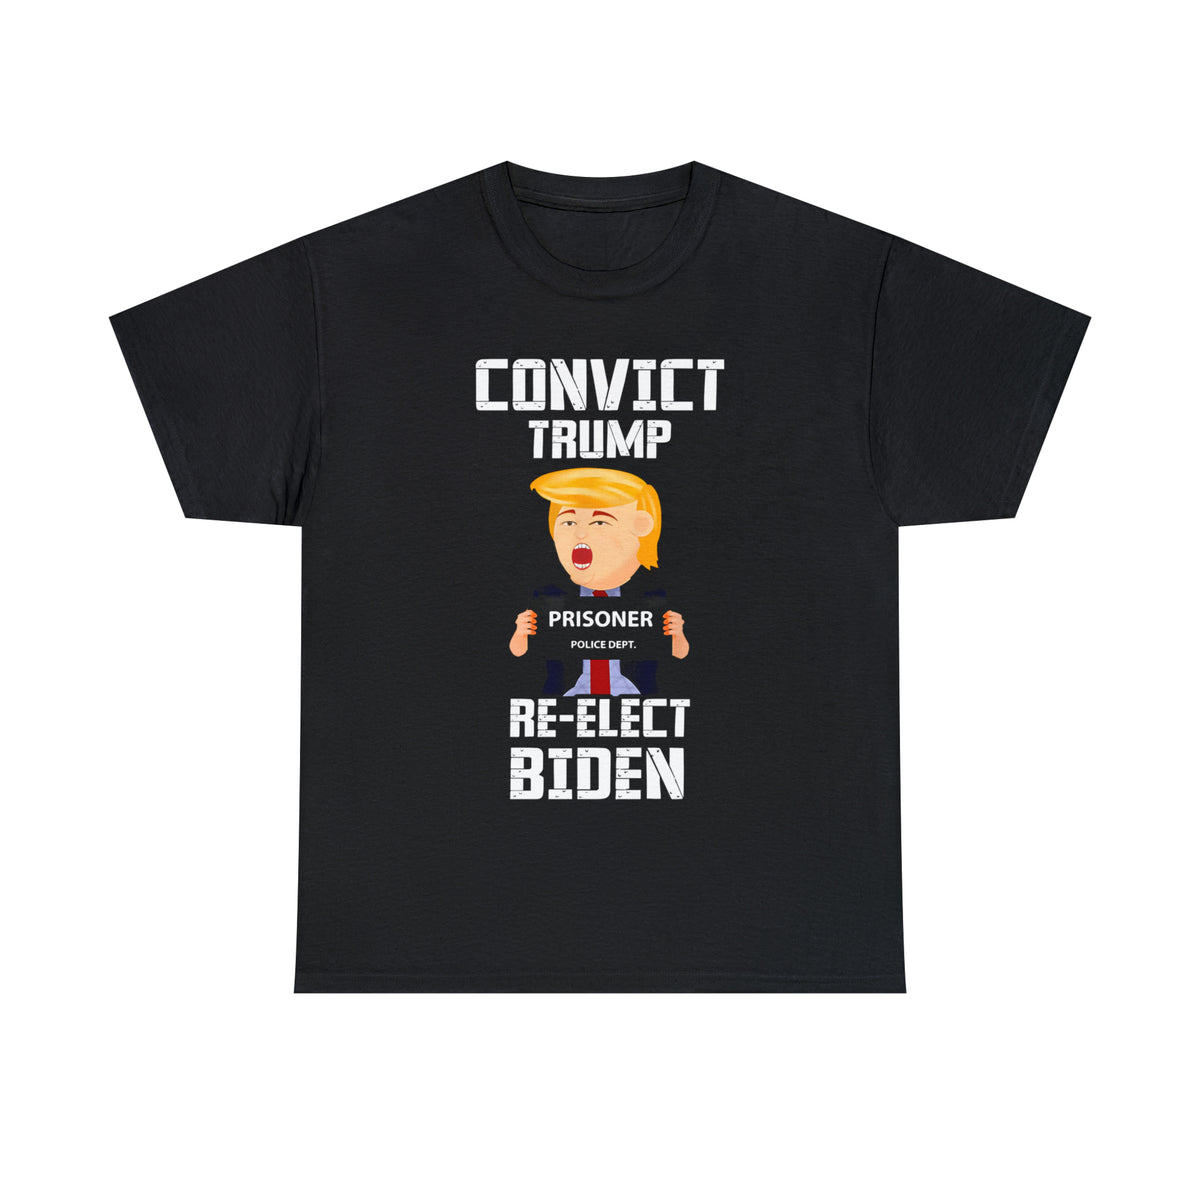 Convict Trump, Re-Elect Biden